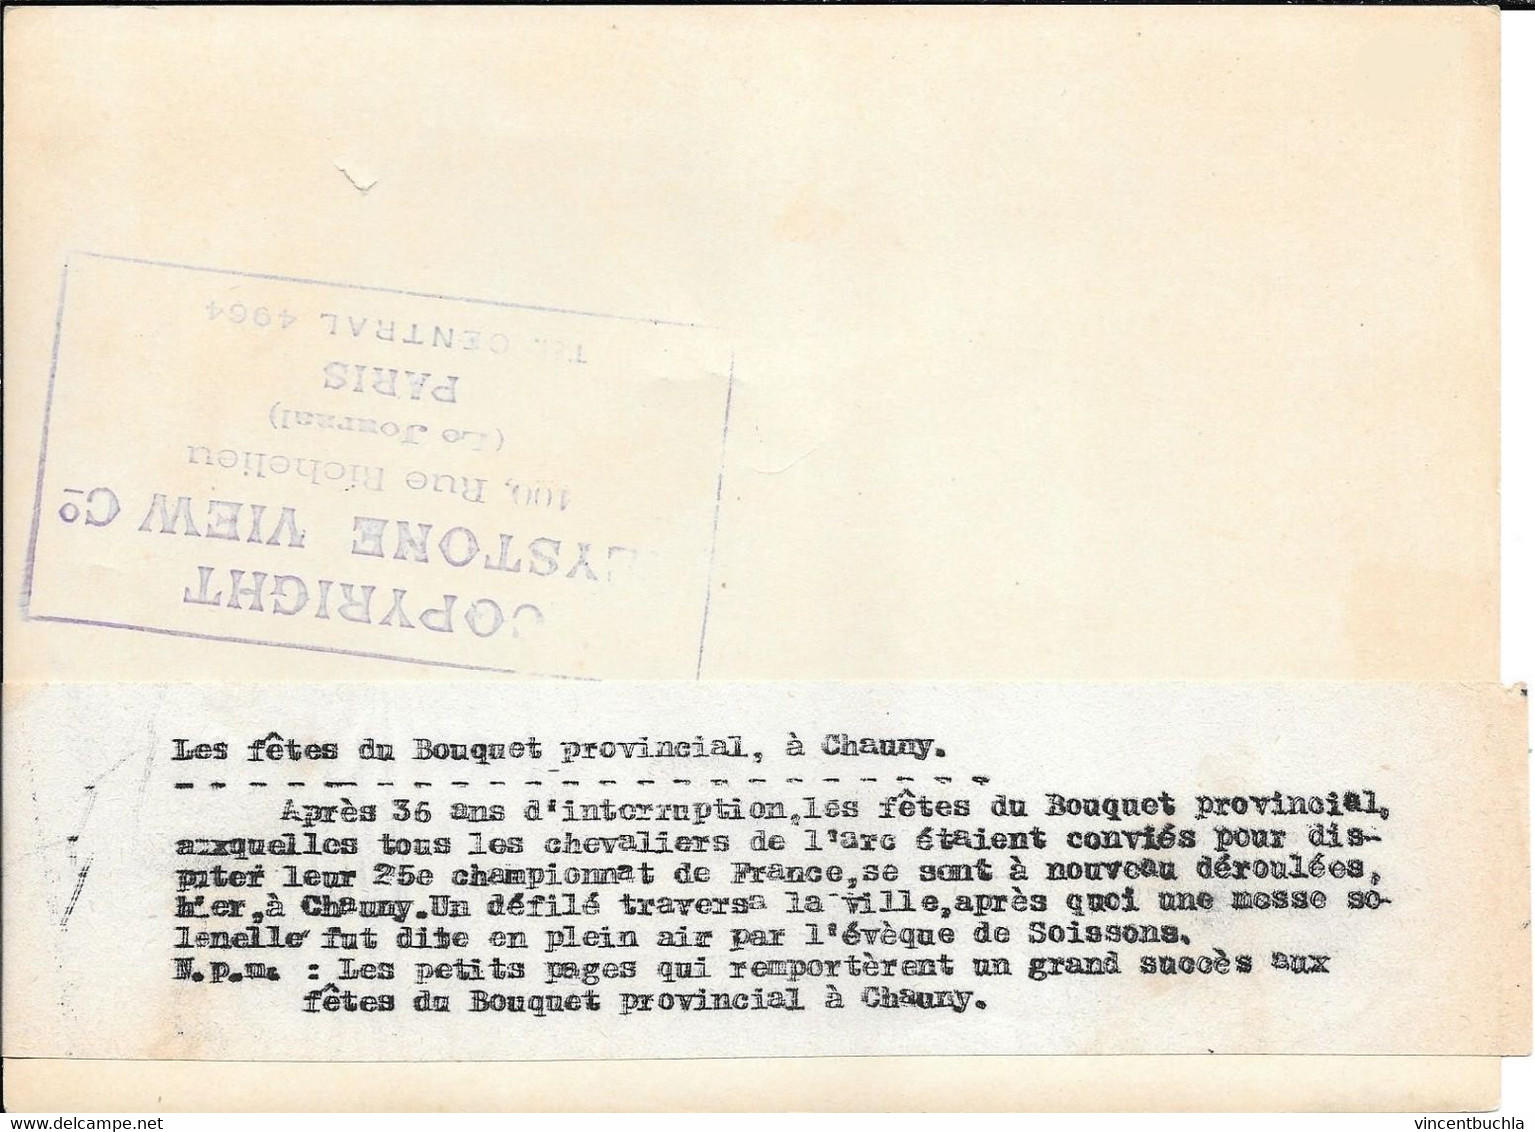 Grande Photo Bouquet Provincial Chauny (Aisne) 17 Mai 1928 25è Championat France 12 Petits Pages Keystone Paris - Tir à L'Arc